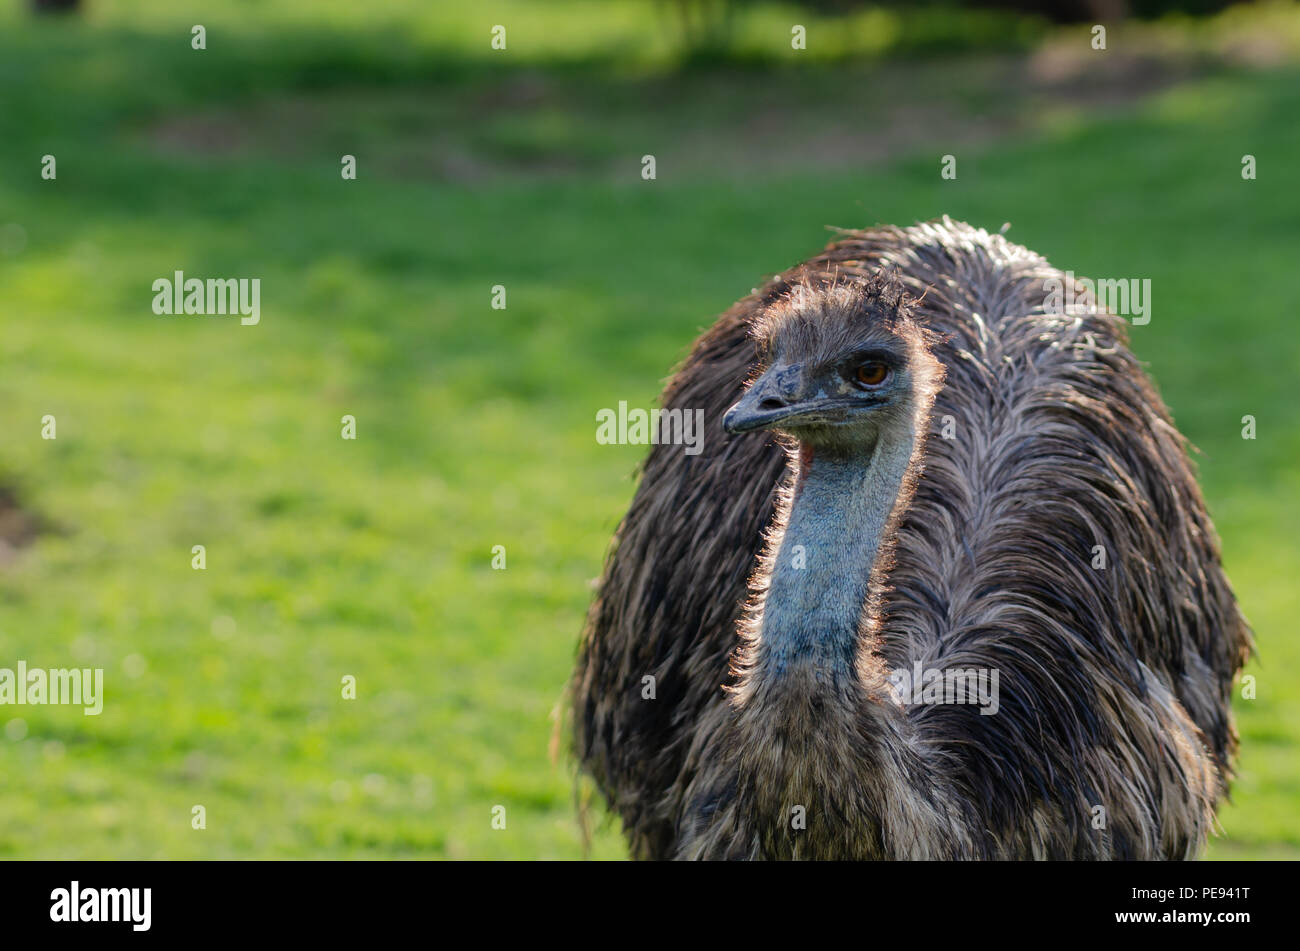 Portrait of a South American ostrich Nandu close-up Stock Photo